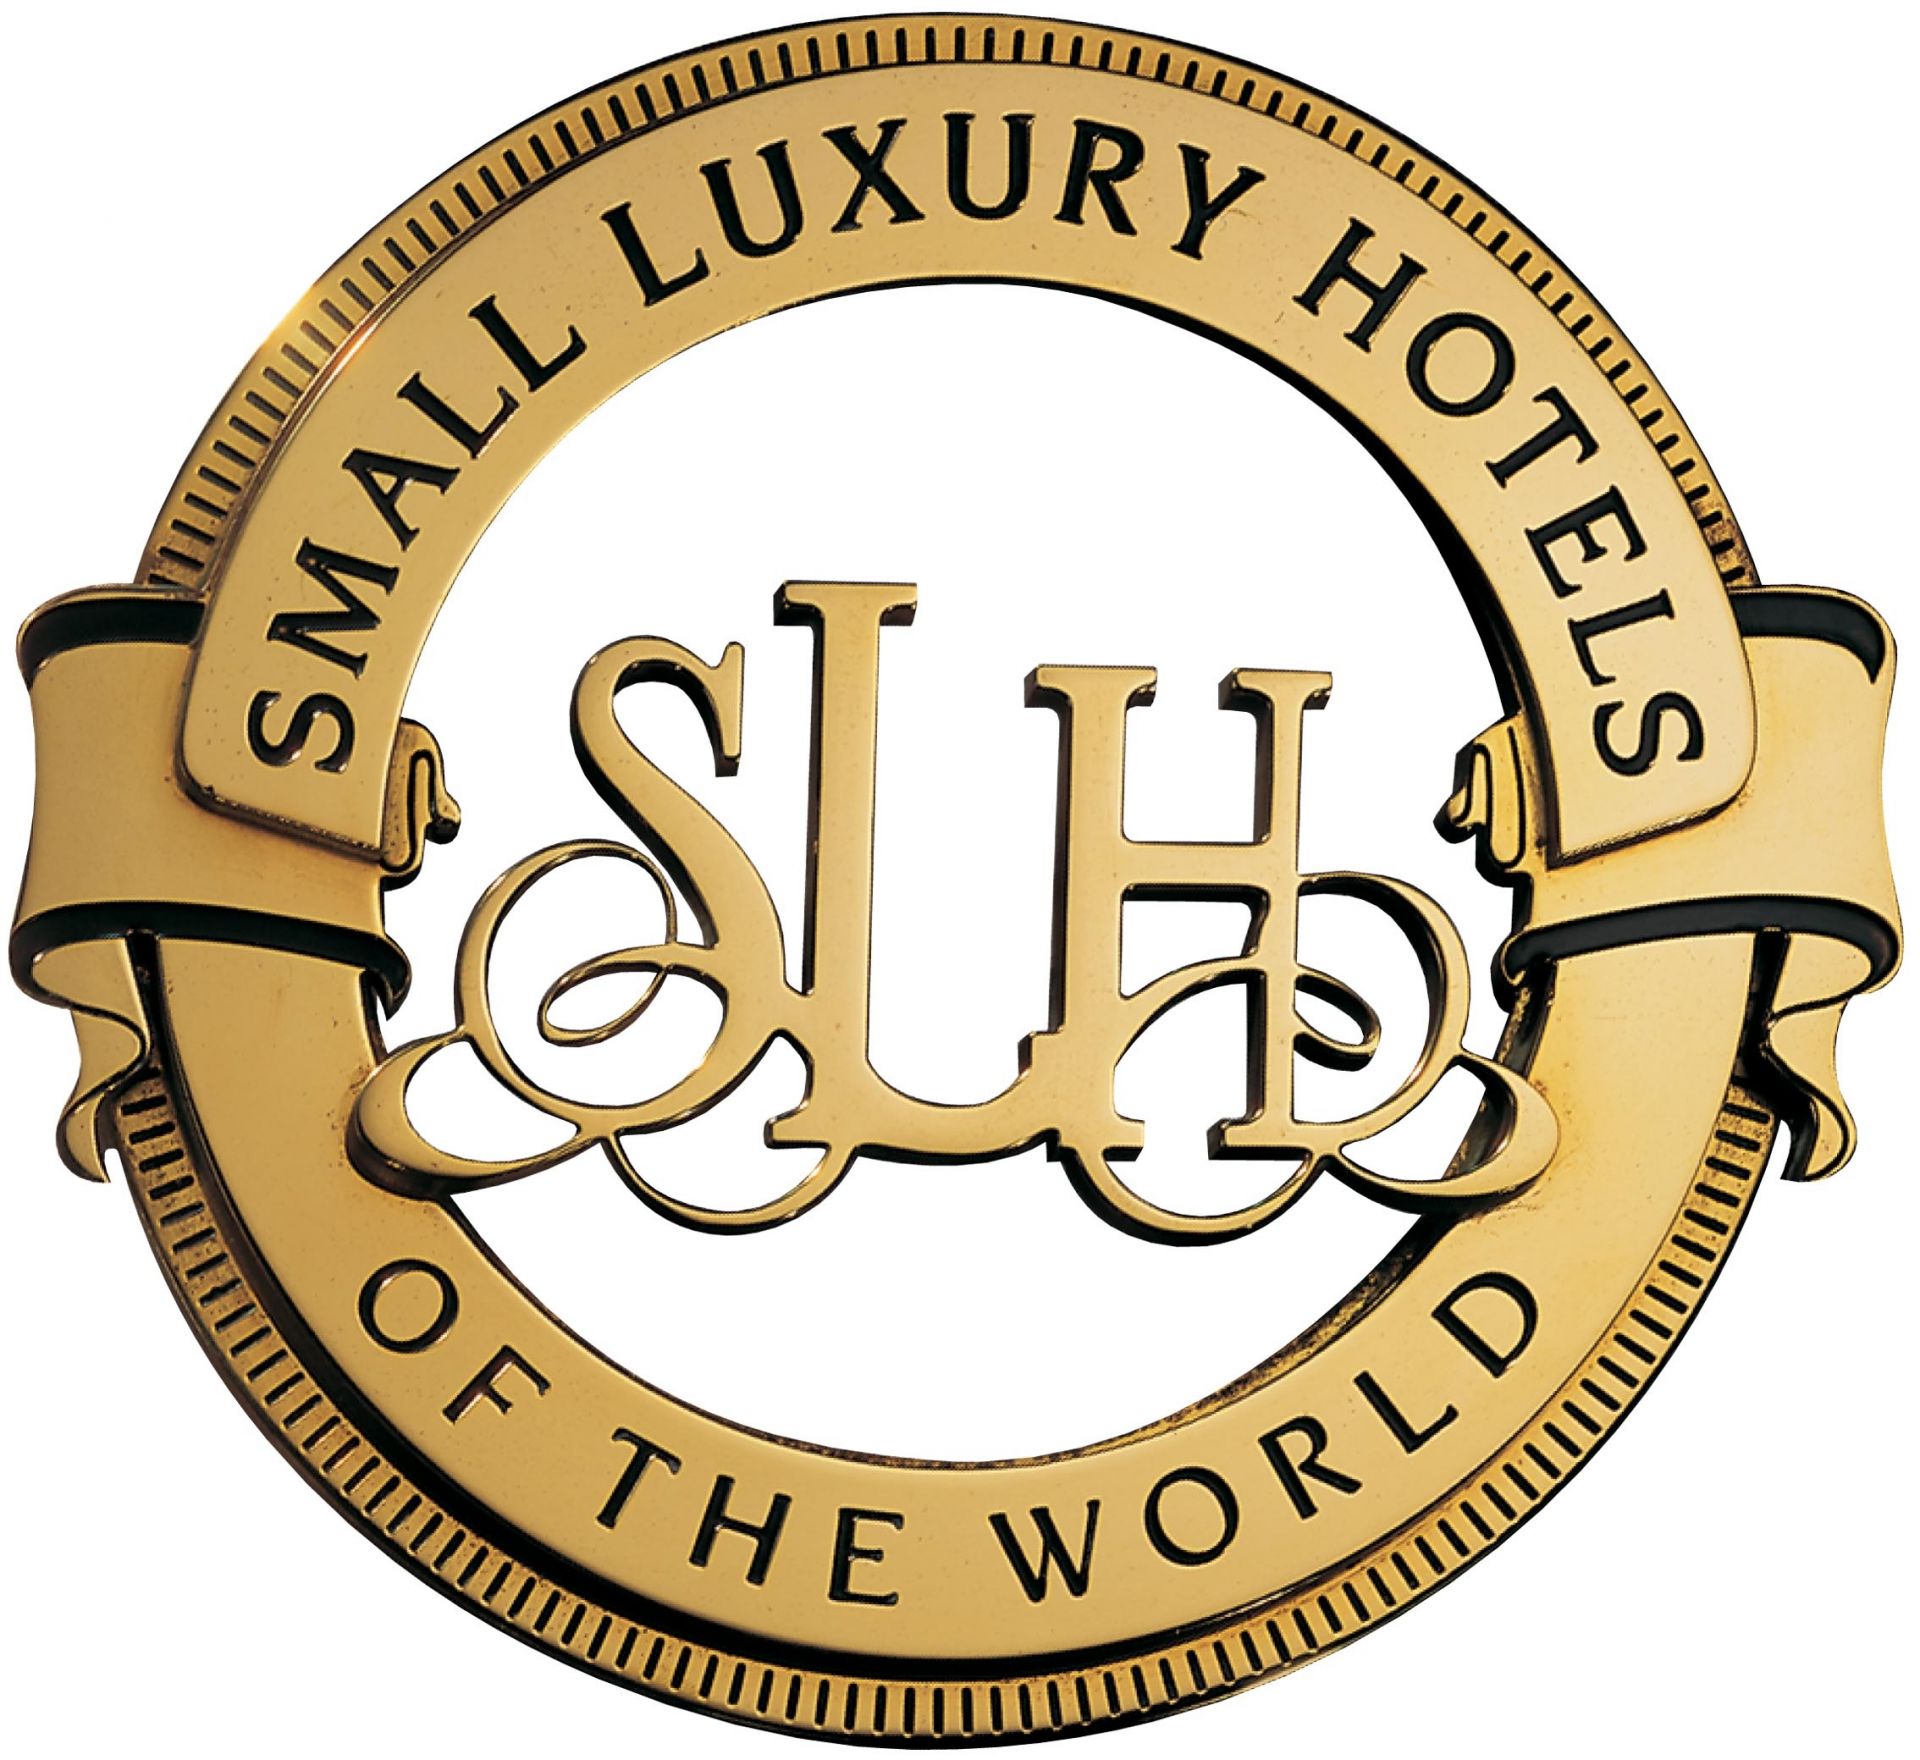 Mr travel. Small Luxury Hotels of the World. Логотип гостиницы. Small Luxury Hotels of the World logo. Прованс гостиница логотип.